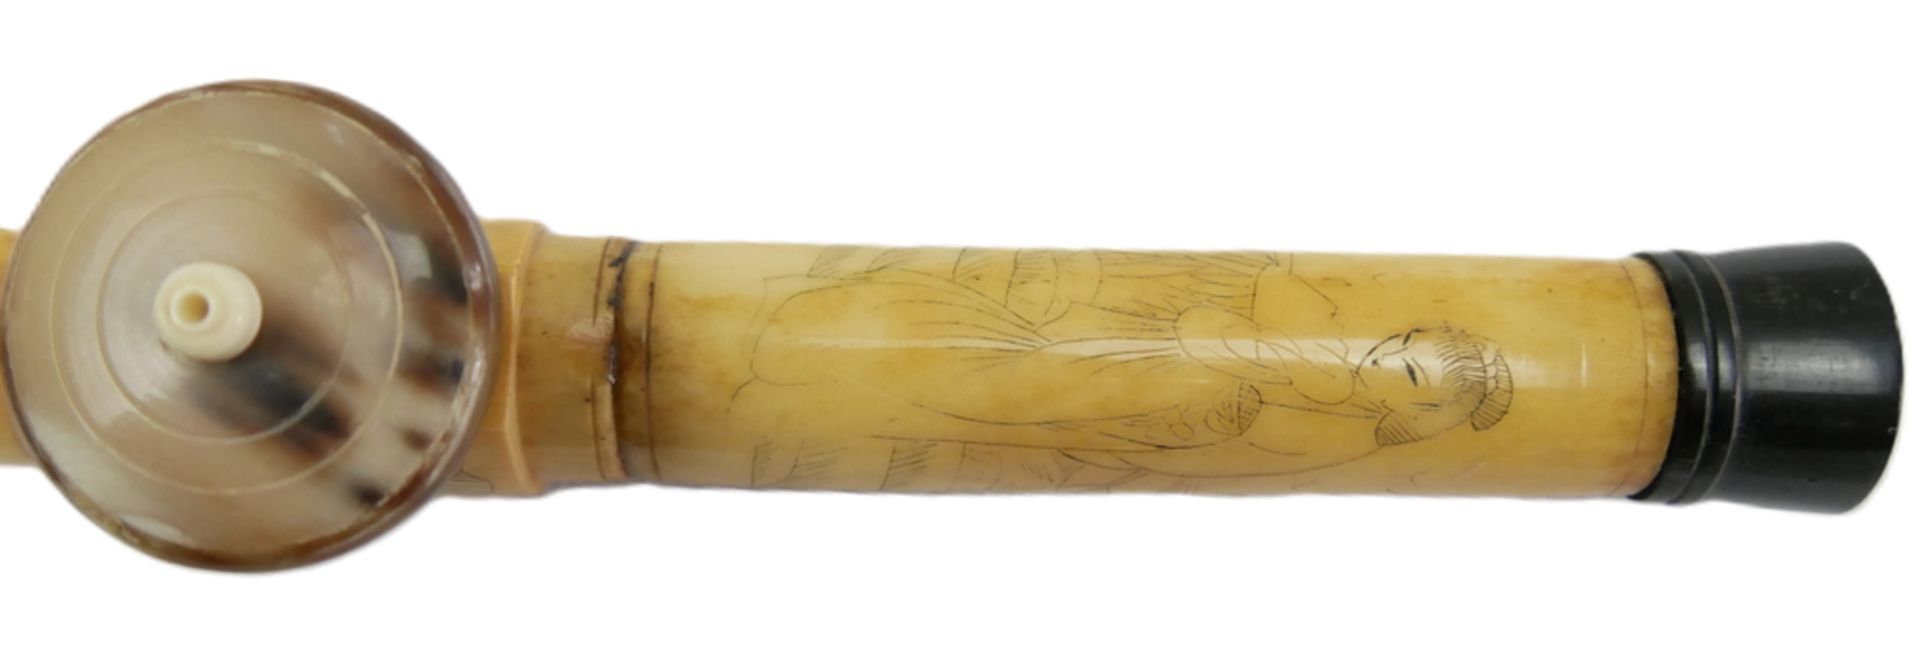 Chinesische Opiumpfeife aus Knochen, geschnitzt und verziert mit Geishas und Landschaften. Länge ca. - Image 3 of 3